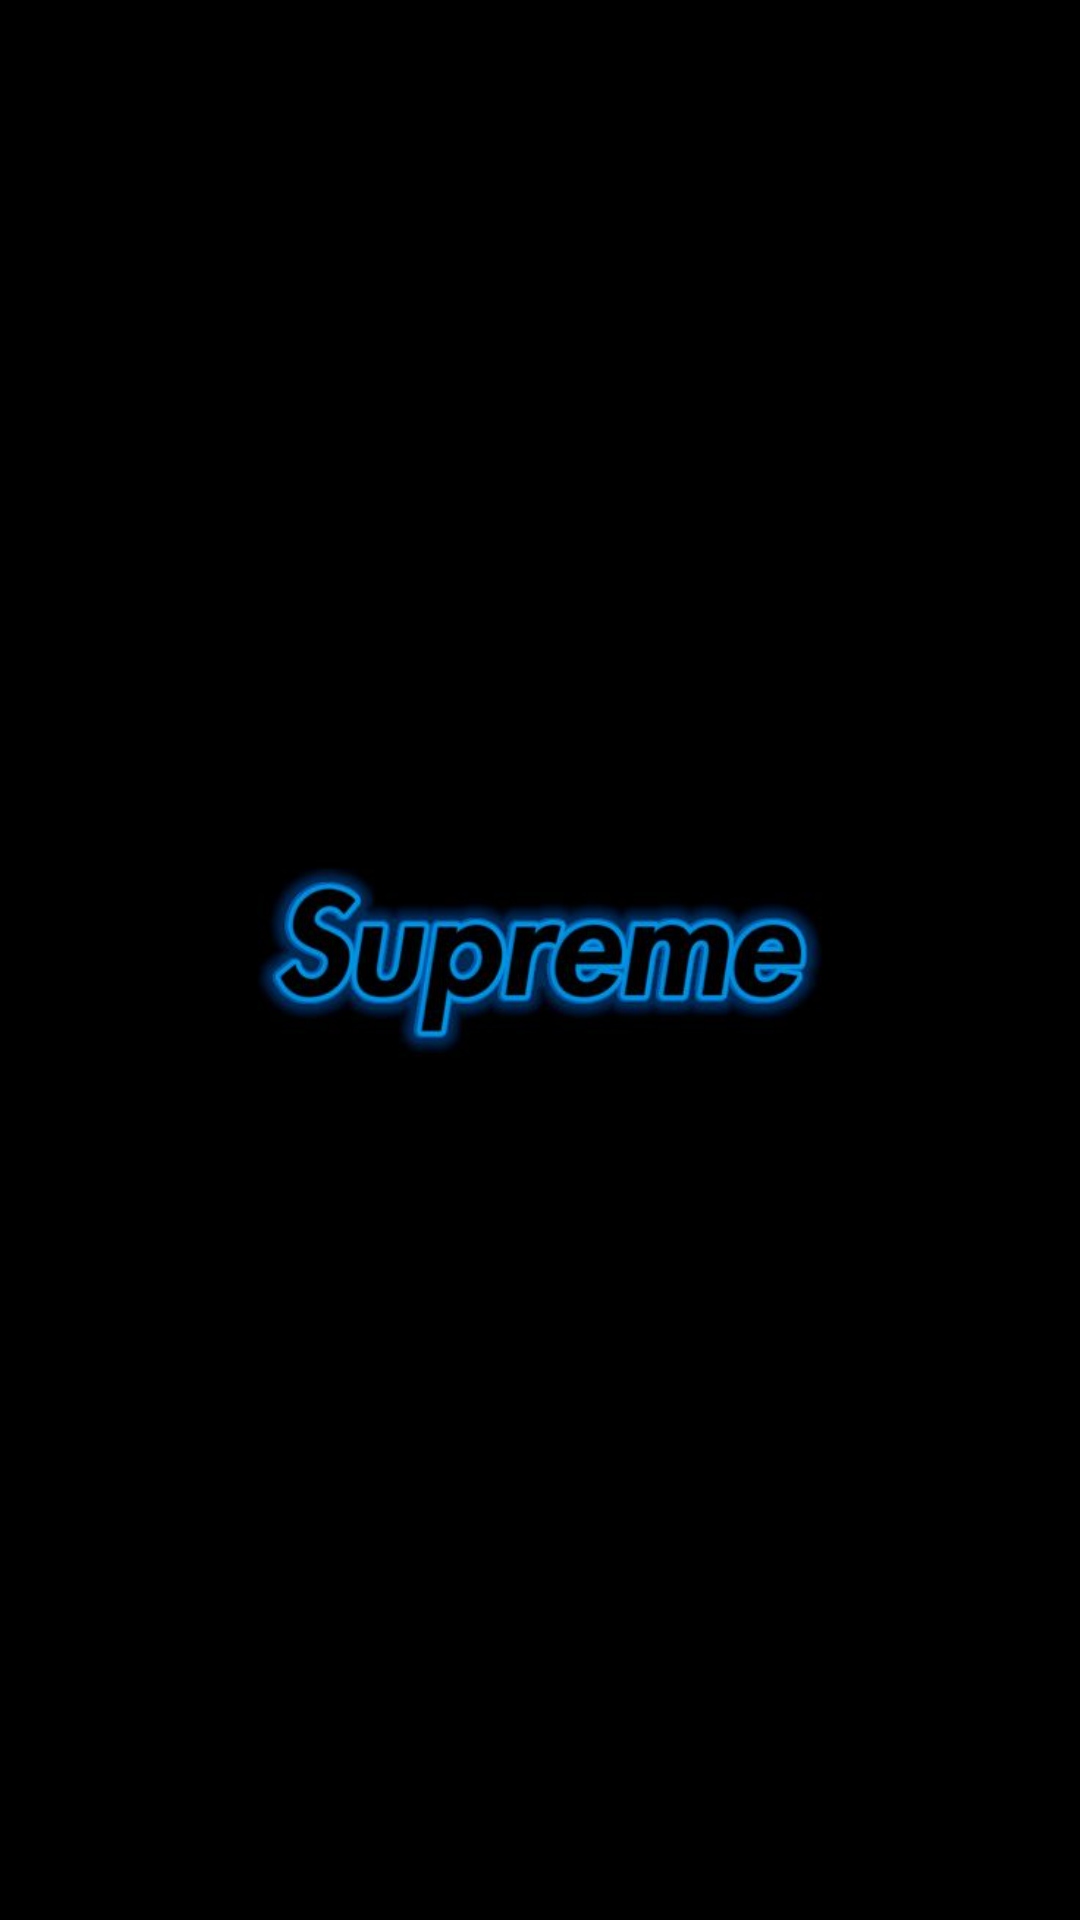 Wallpaper Supreme Logo